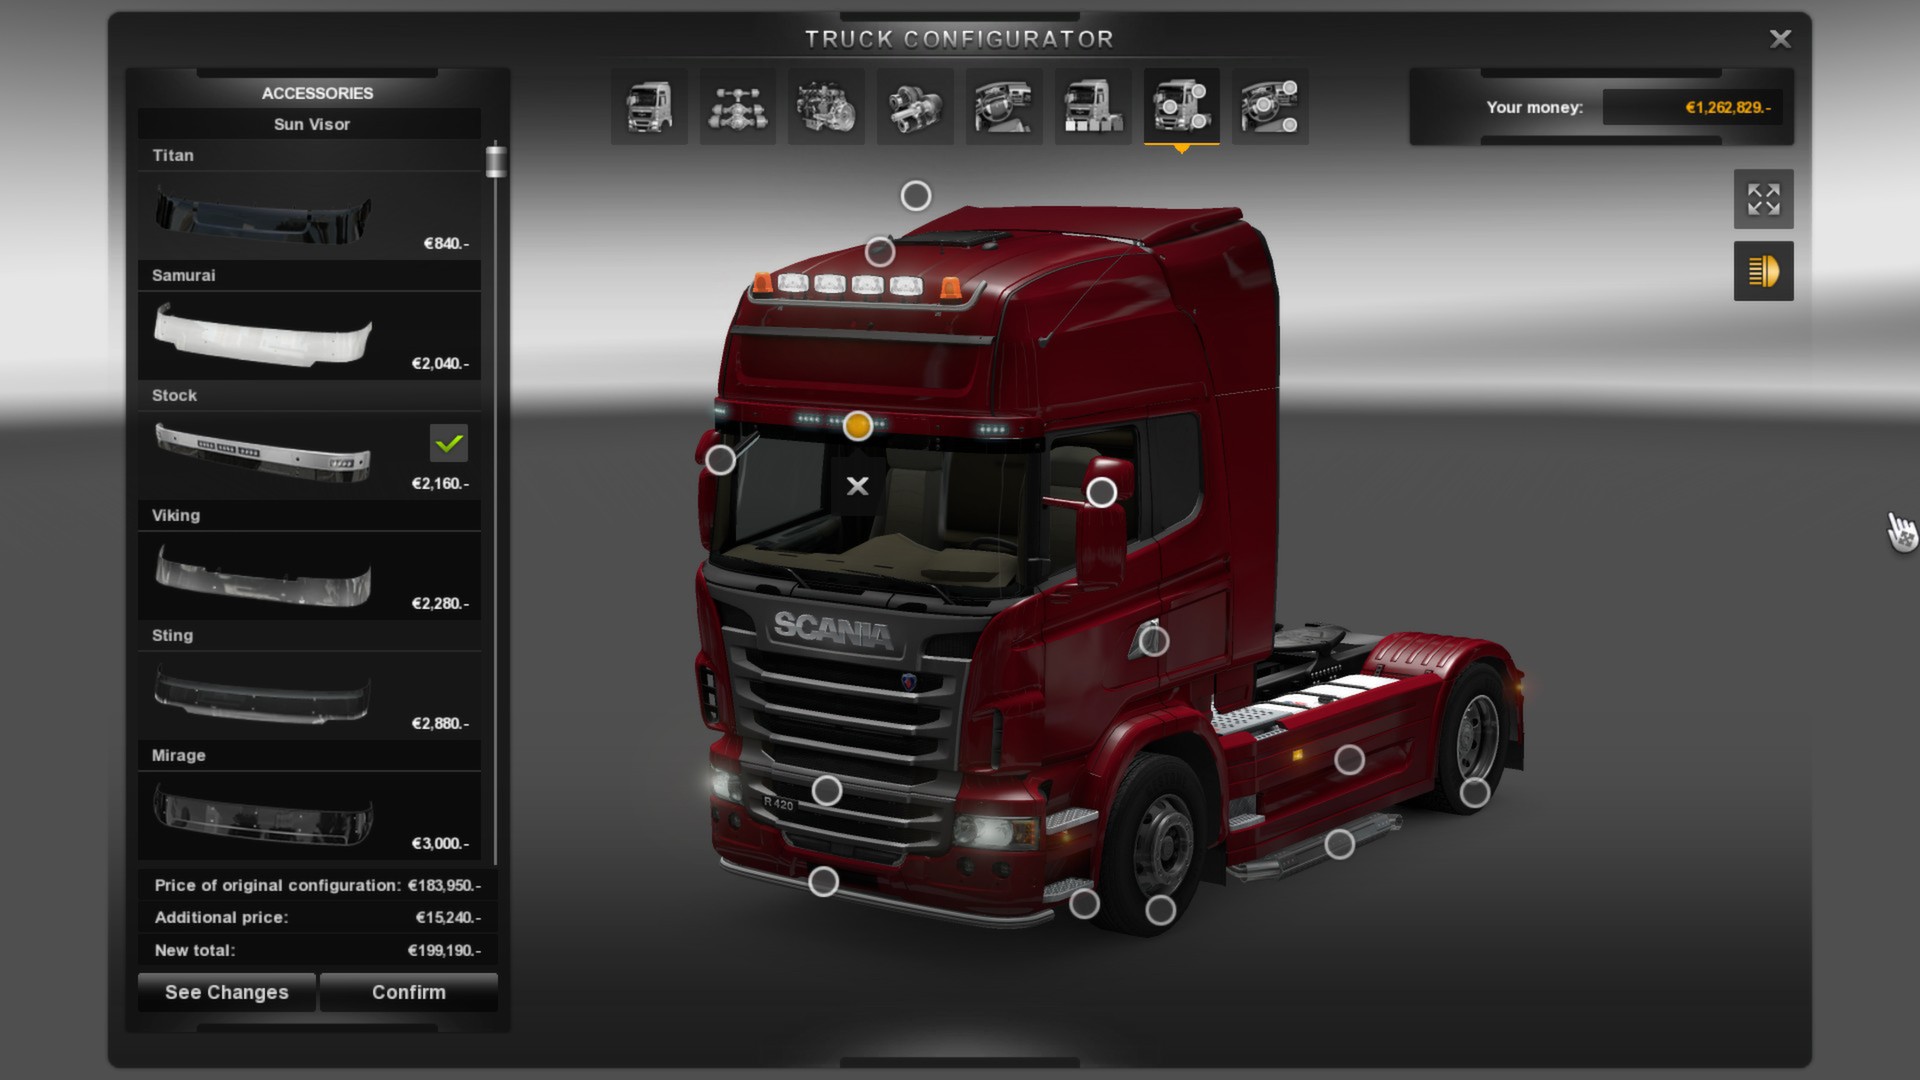 欧洲卡车模拟 2游戏图集